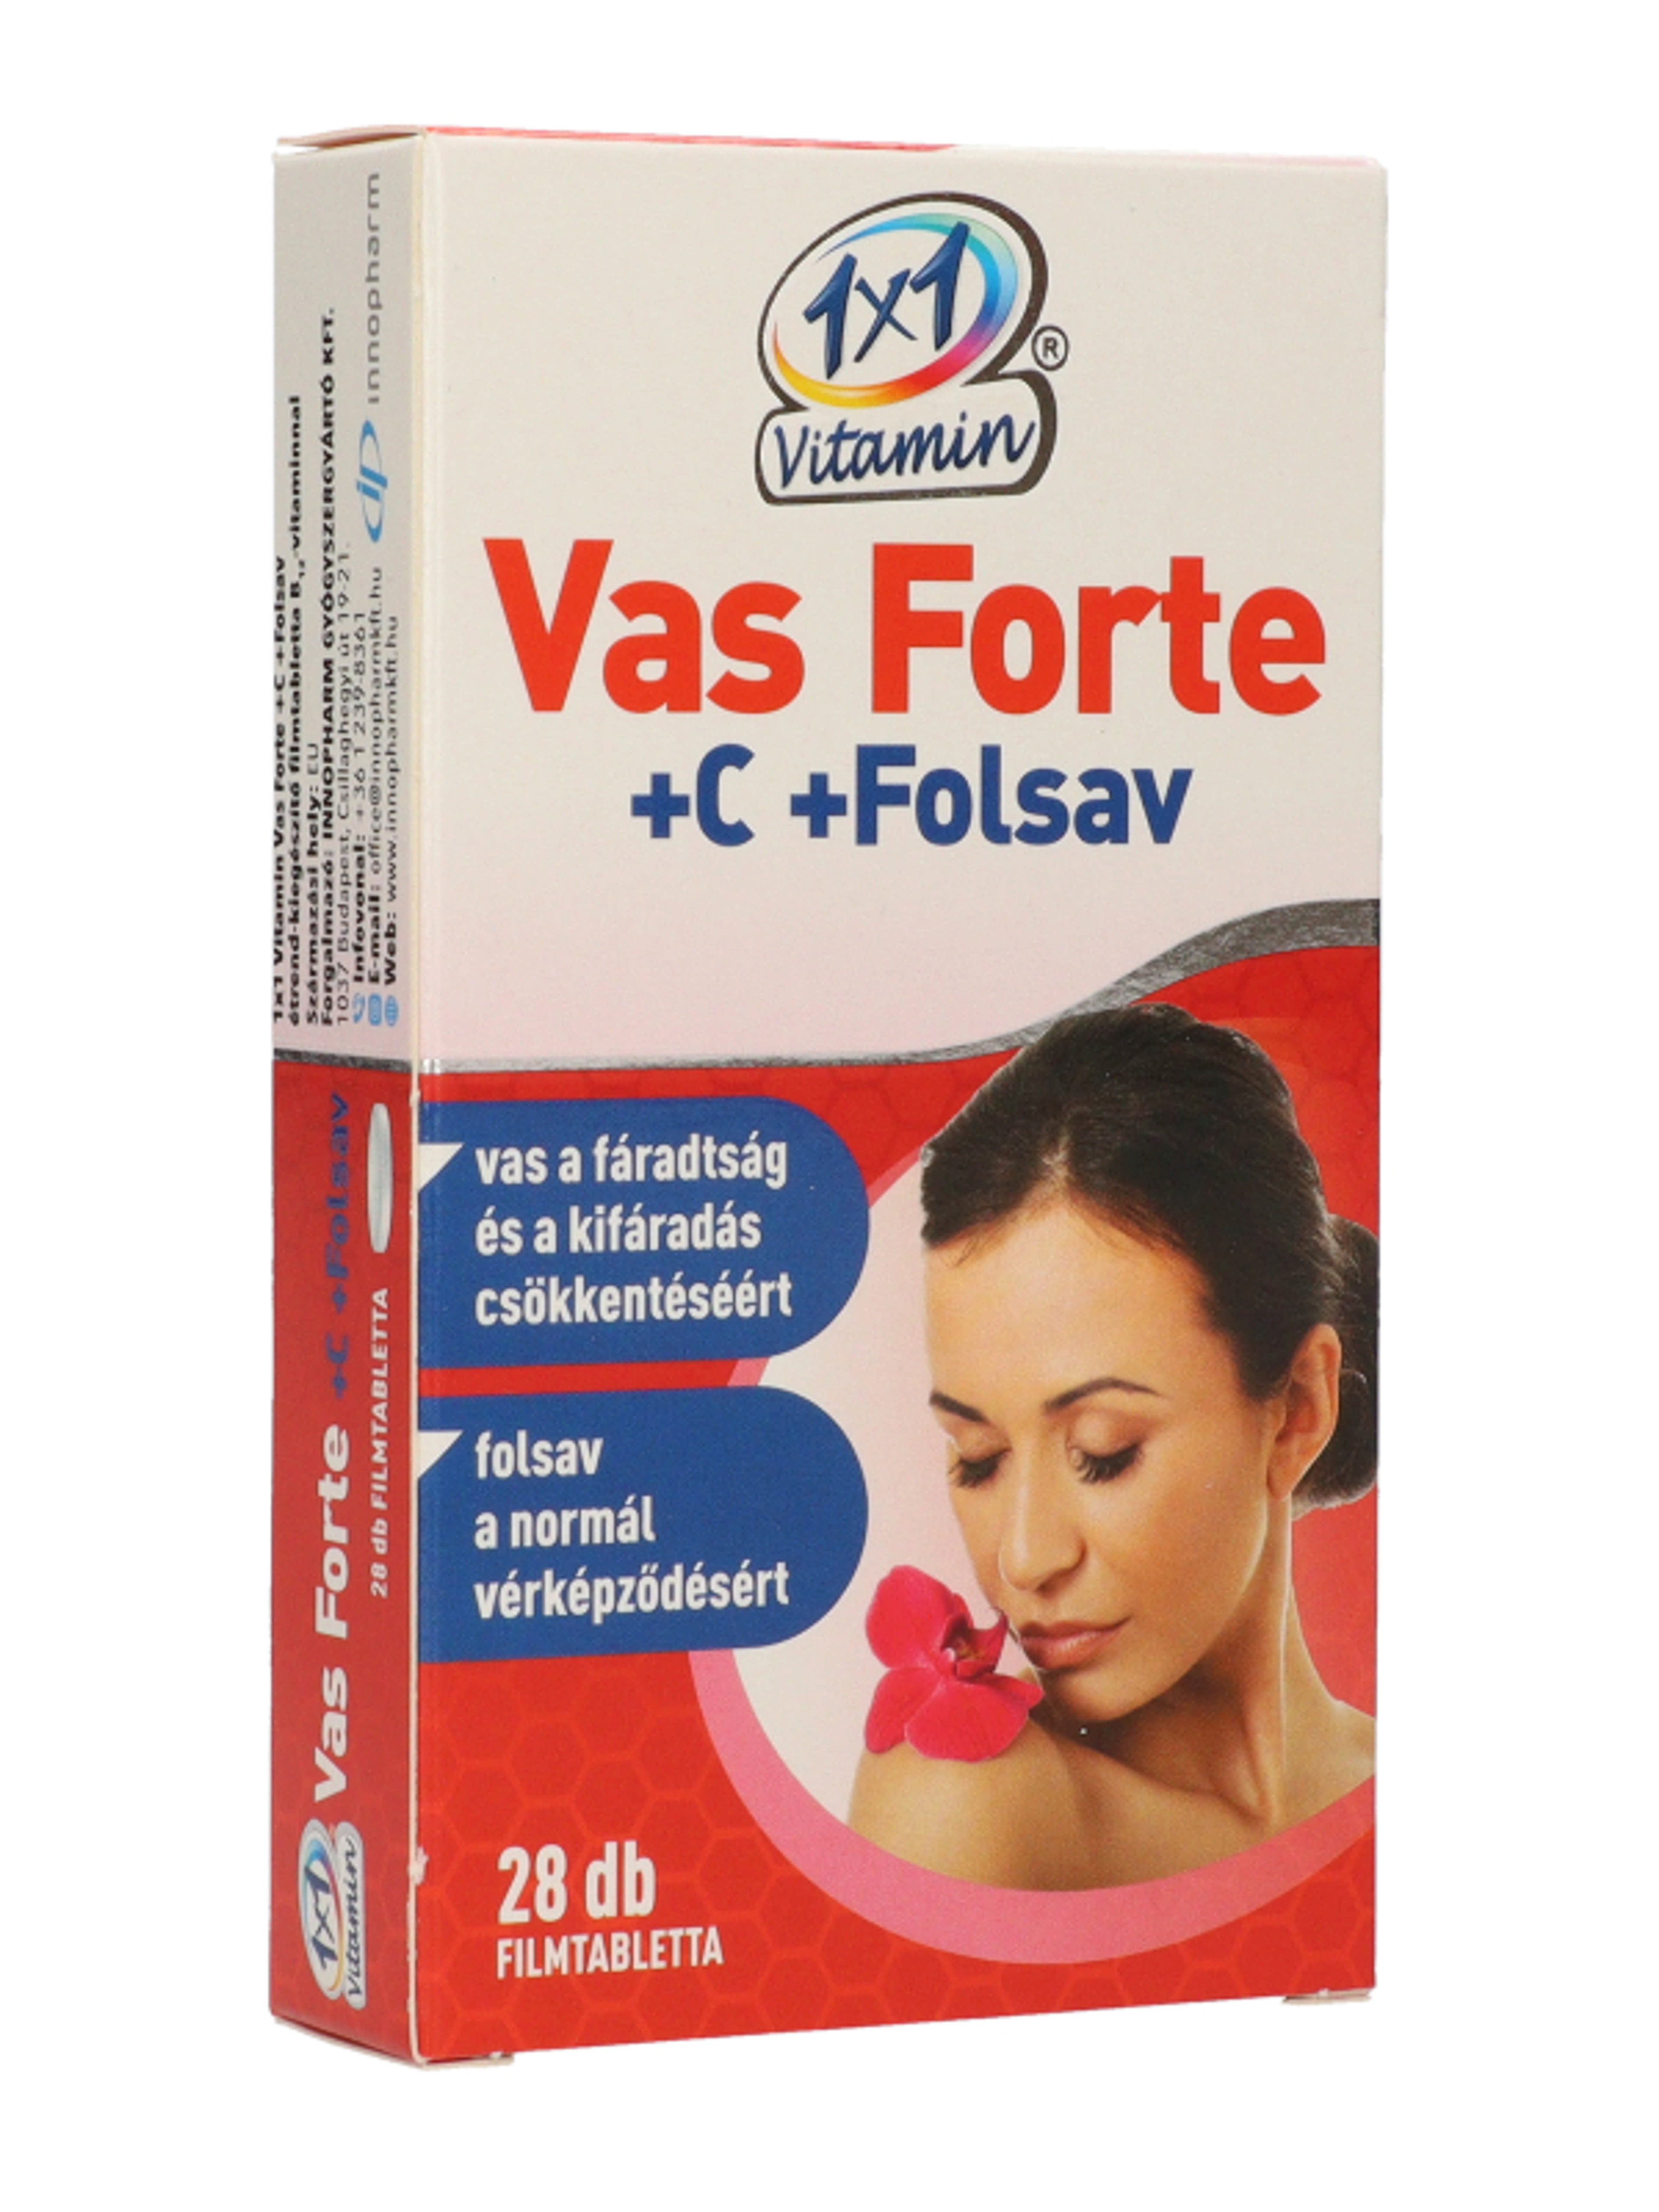 1x1 Vitamin Vas Forte Bioperin 500mg Tabletta - 28 db-5